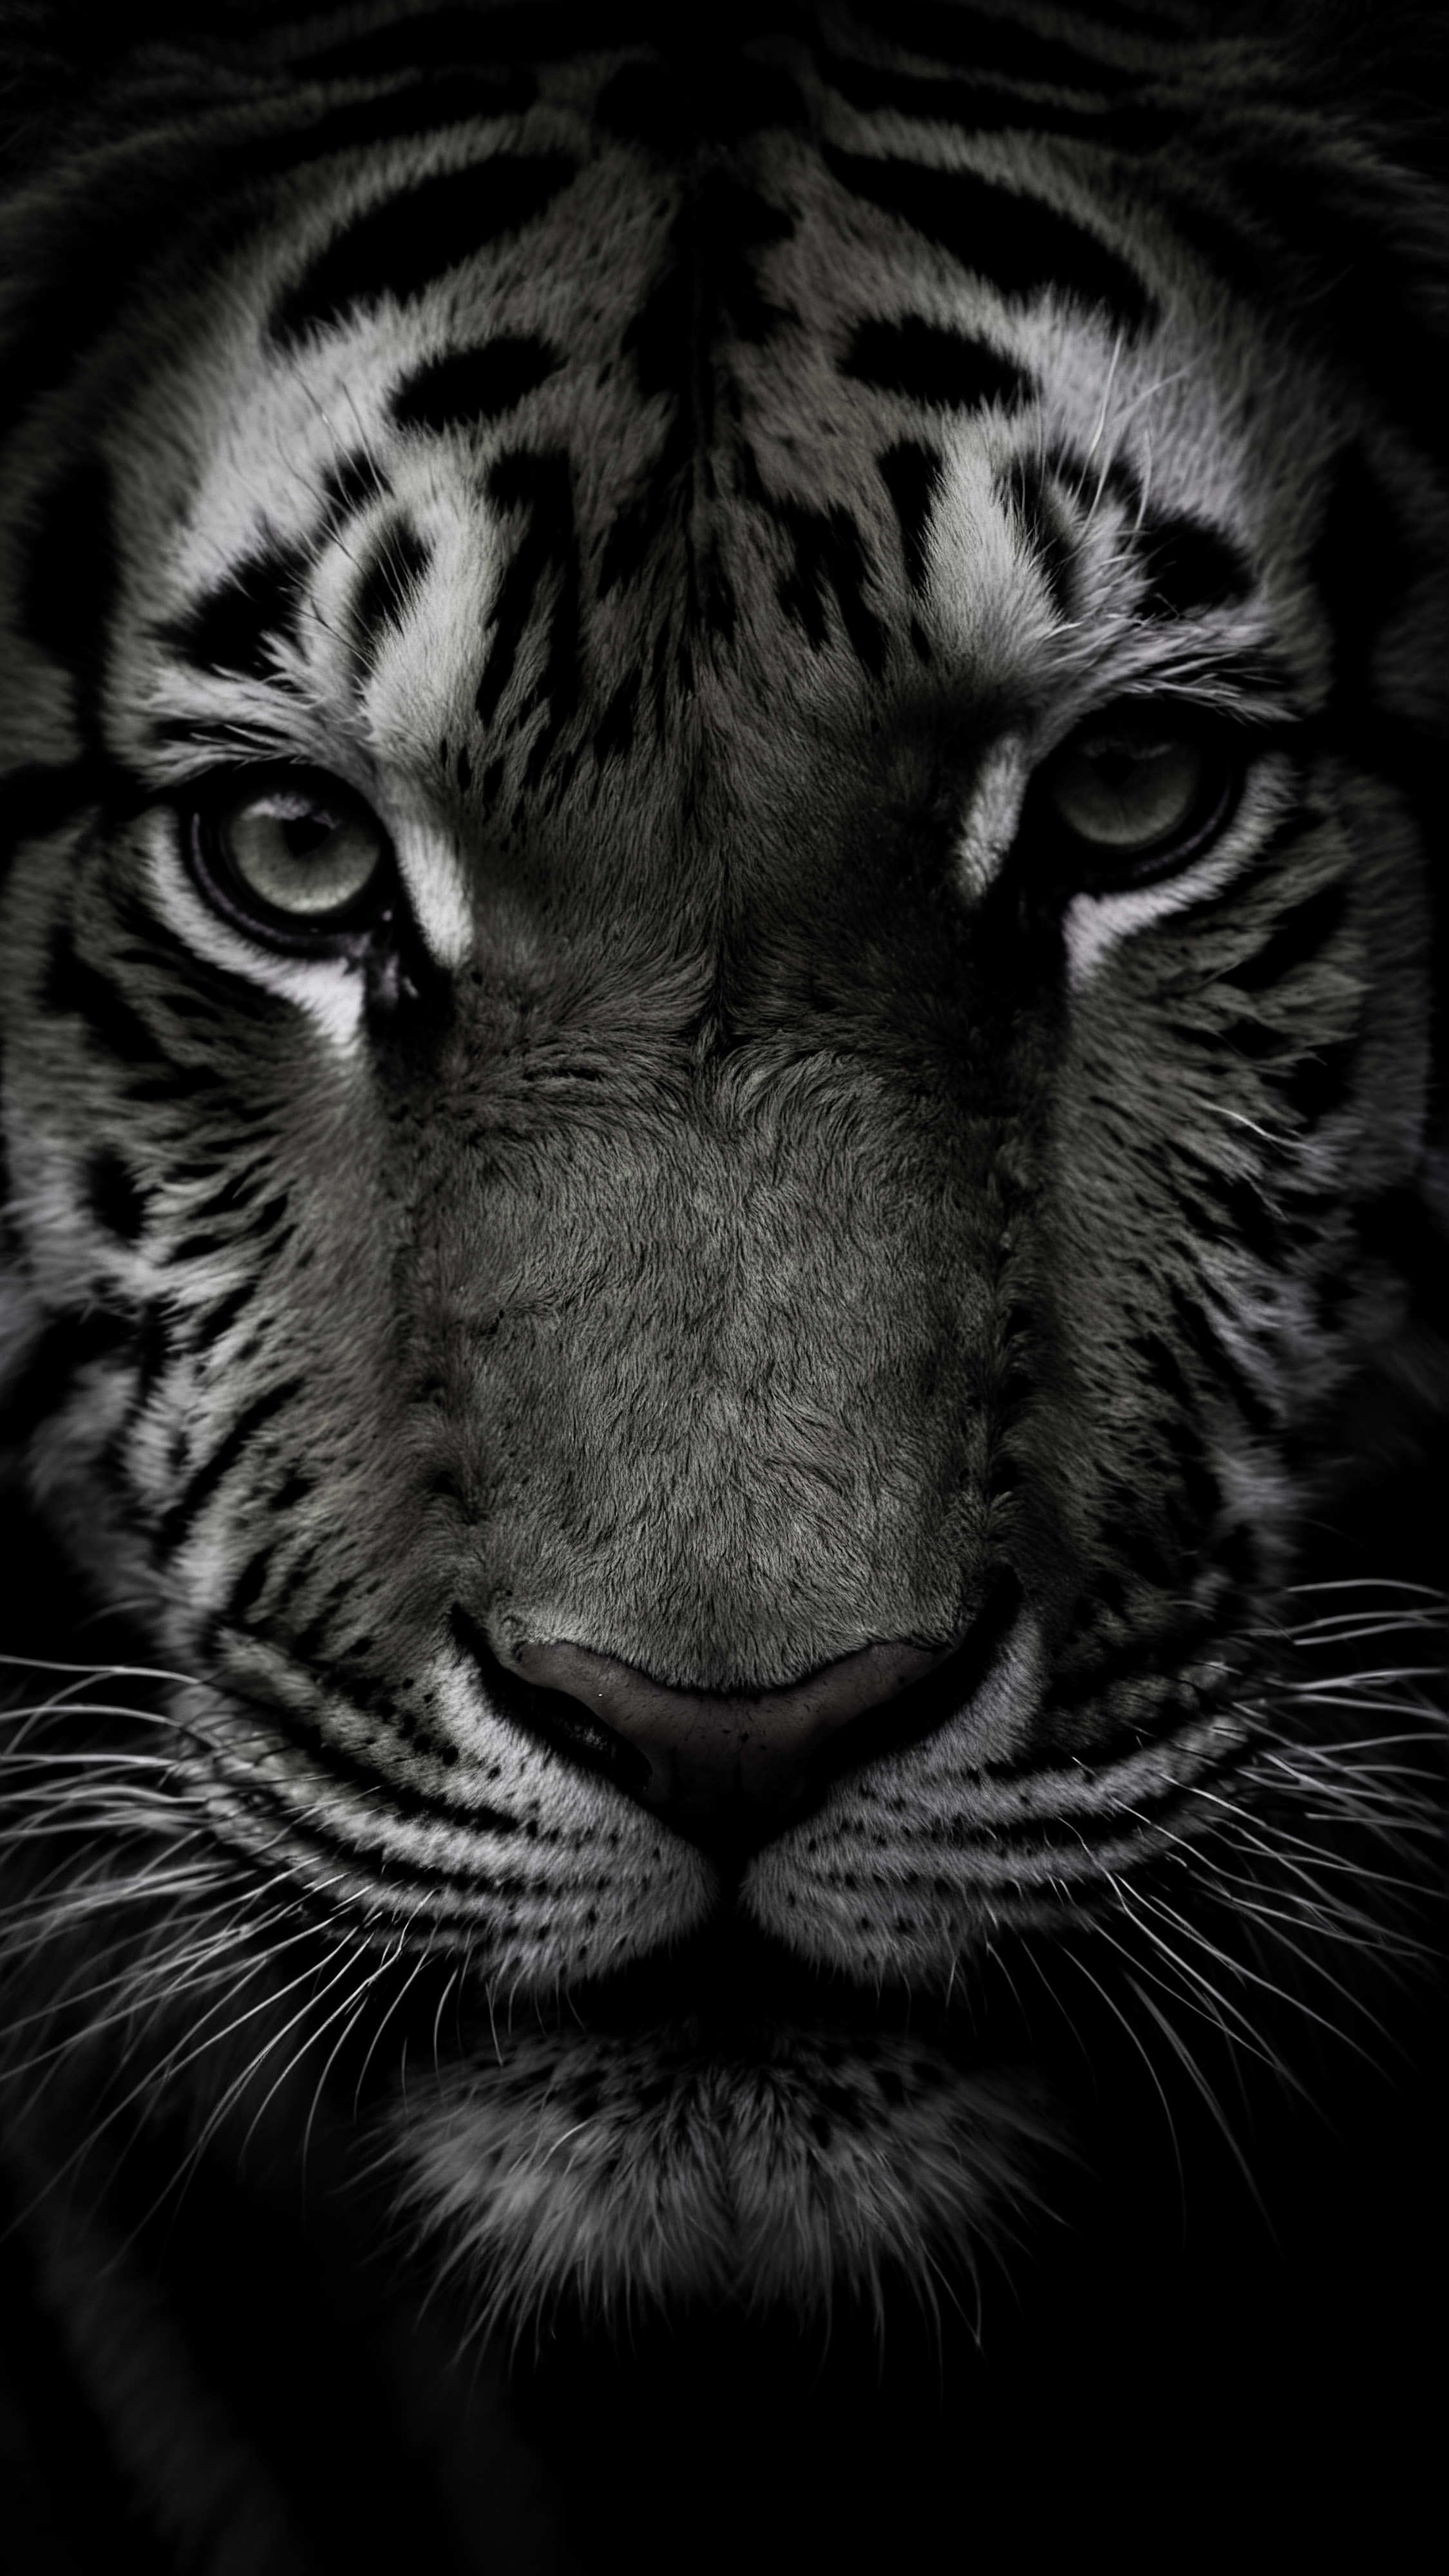 Admirez l'intensité du visage d'un tigre, mis en évidence sur un fond sombre, avec notre fond d'écran esthétique sombre pour iPhone.